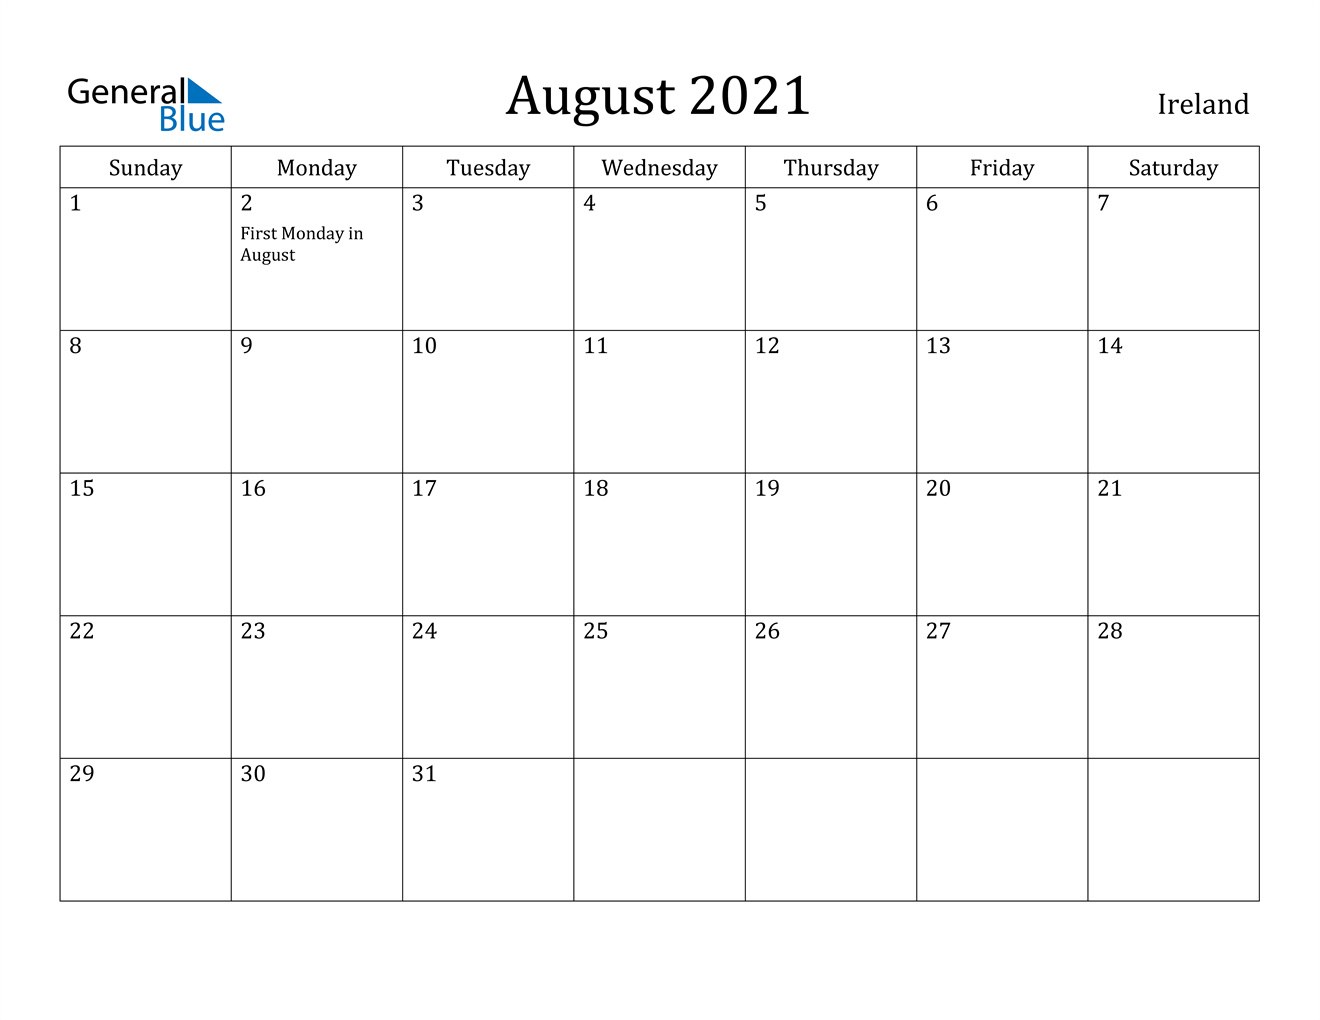 August 2021 Calendar  Ireland intended for August 2021 Calendar Print